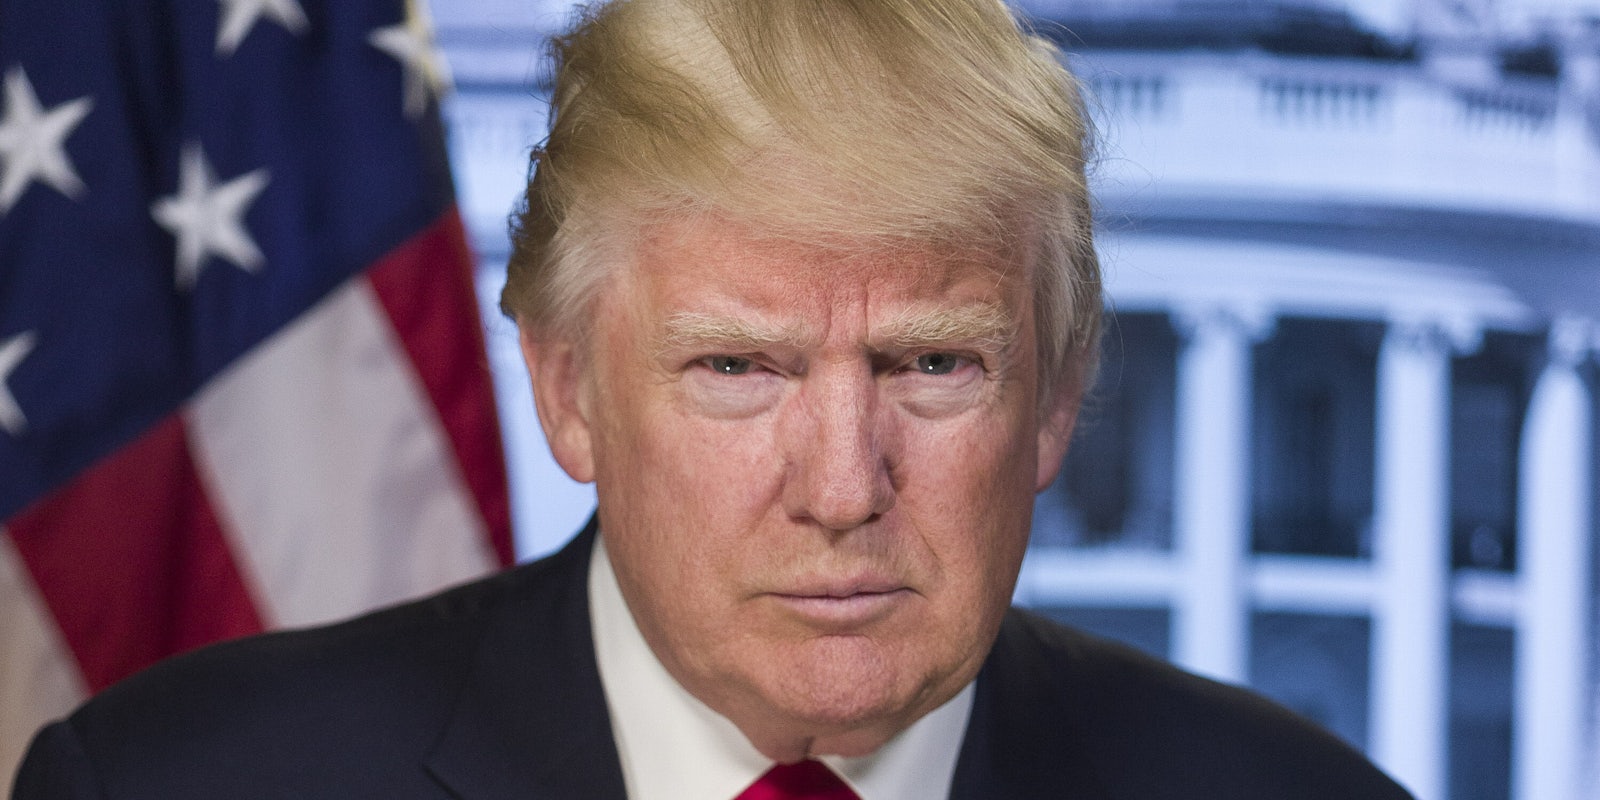 President Donald Trump Official Portrait